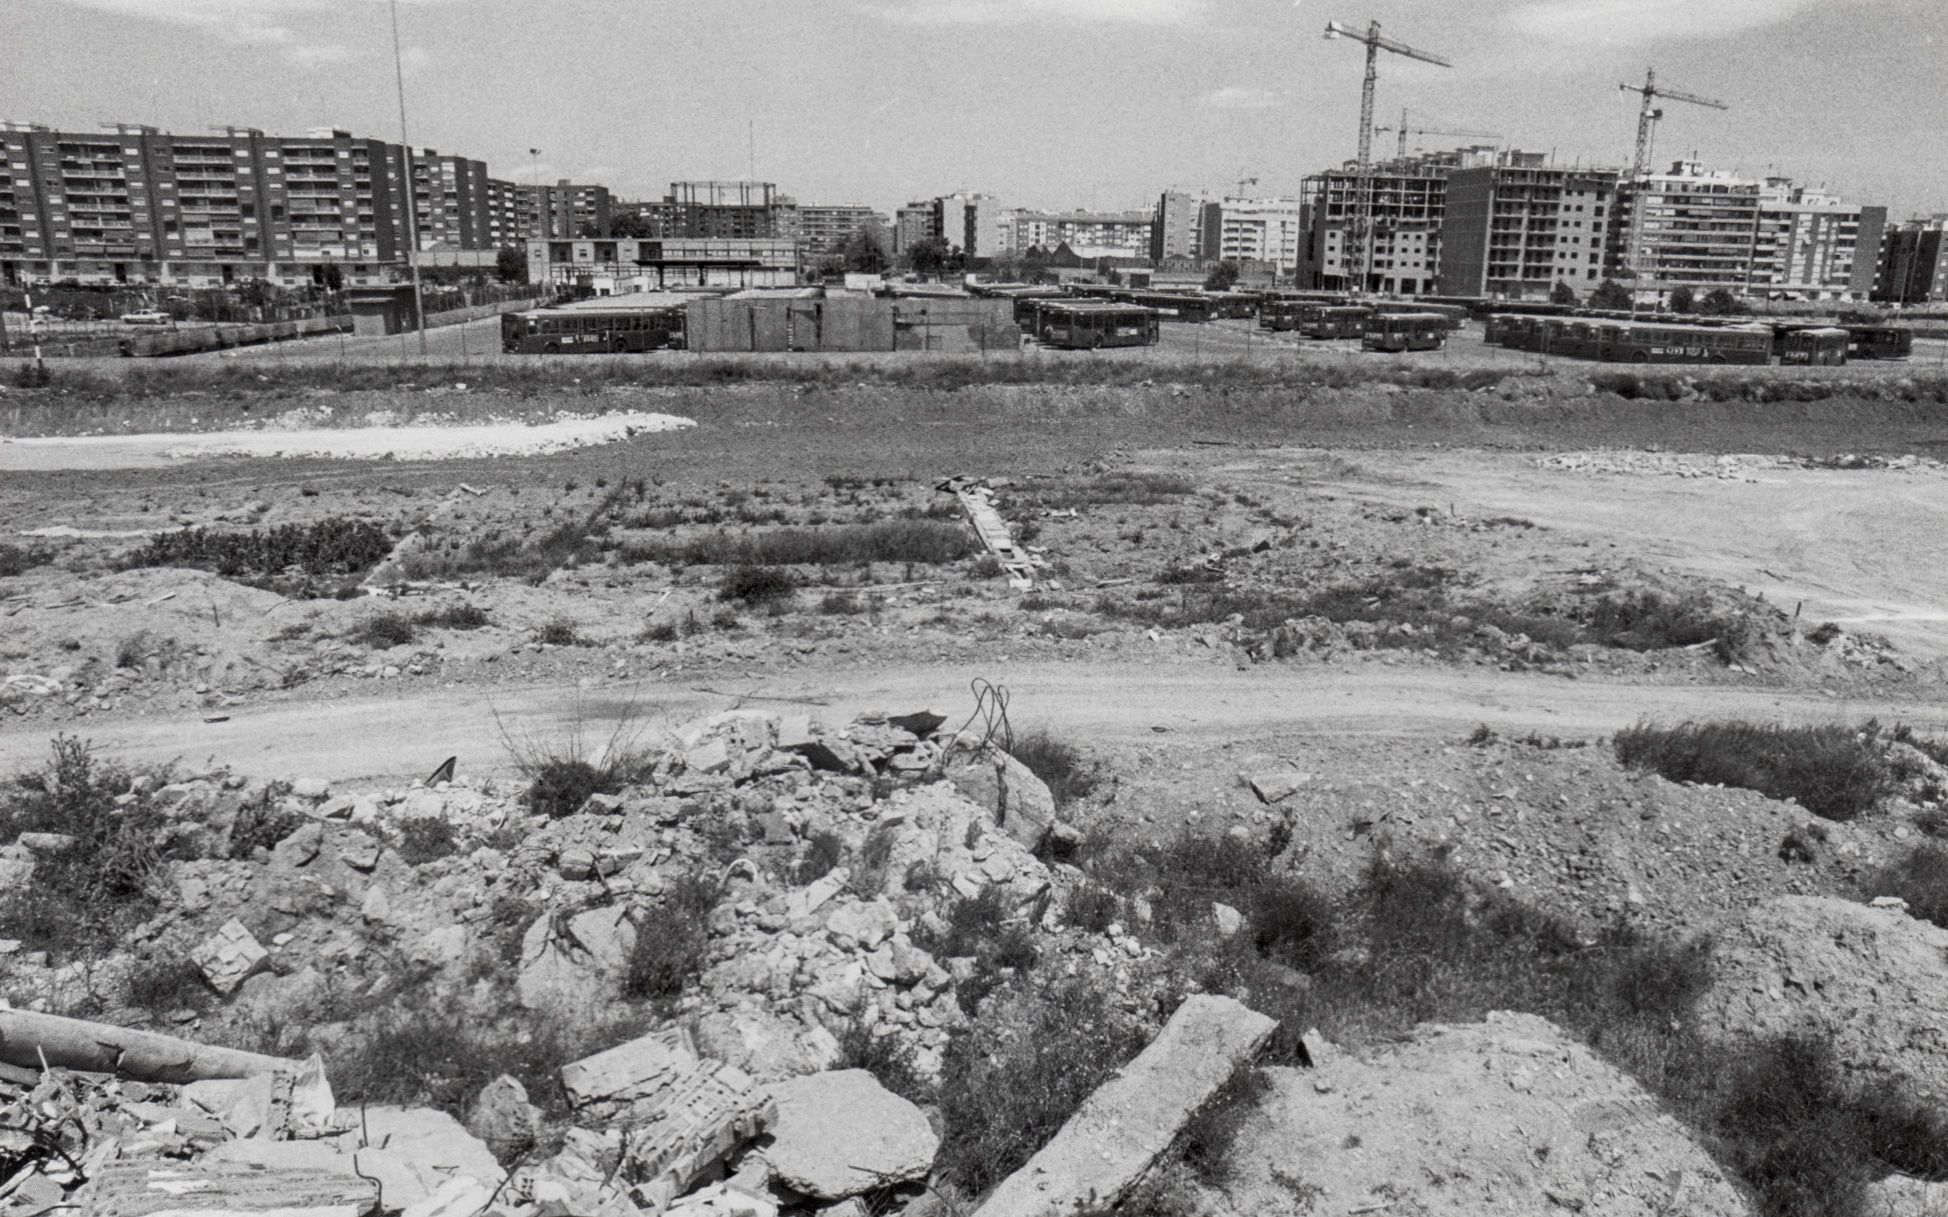 La València desaparecida: Los terrenos de la avenida de Francia y la prolongación de la Alameda